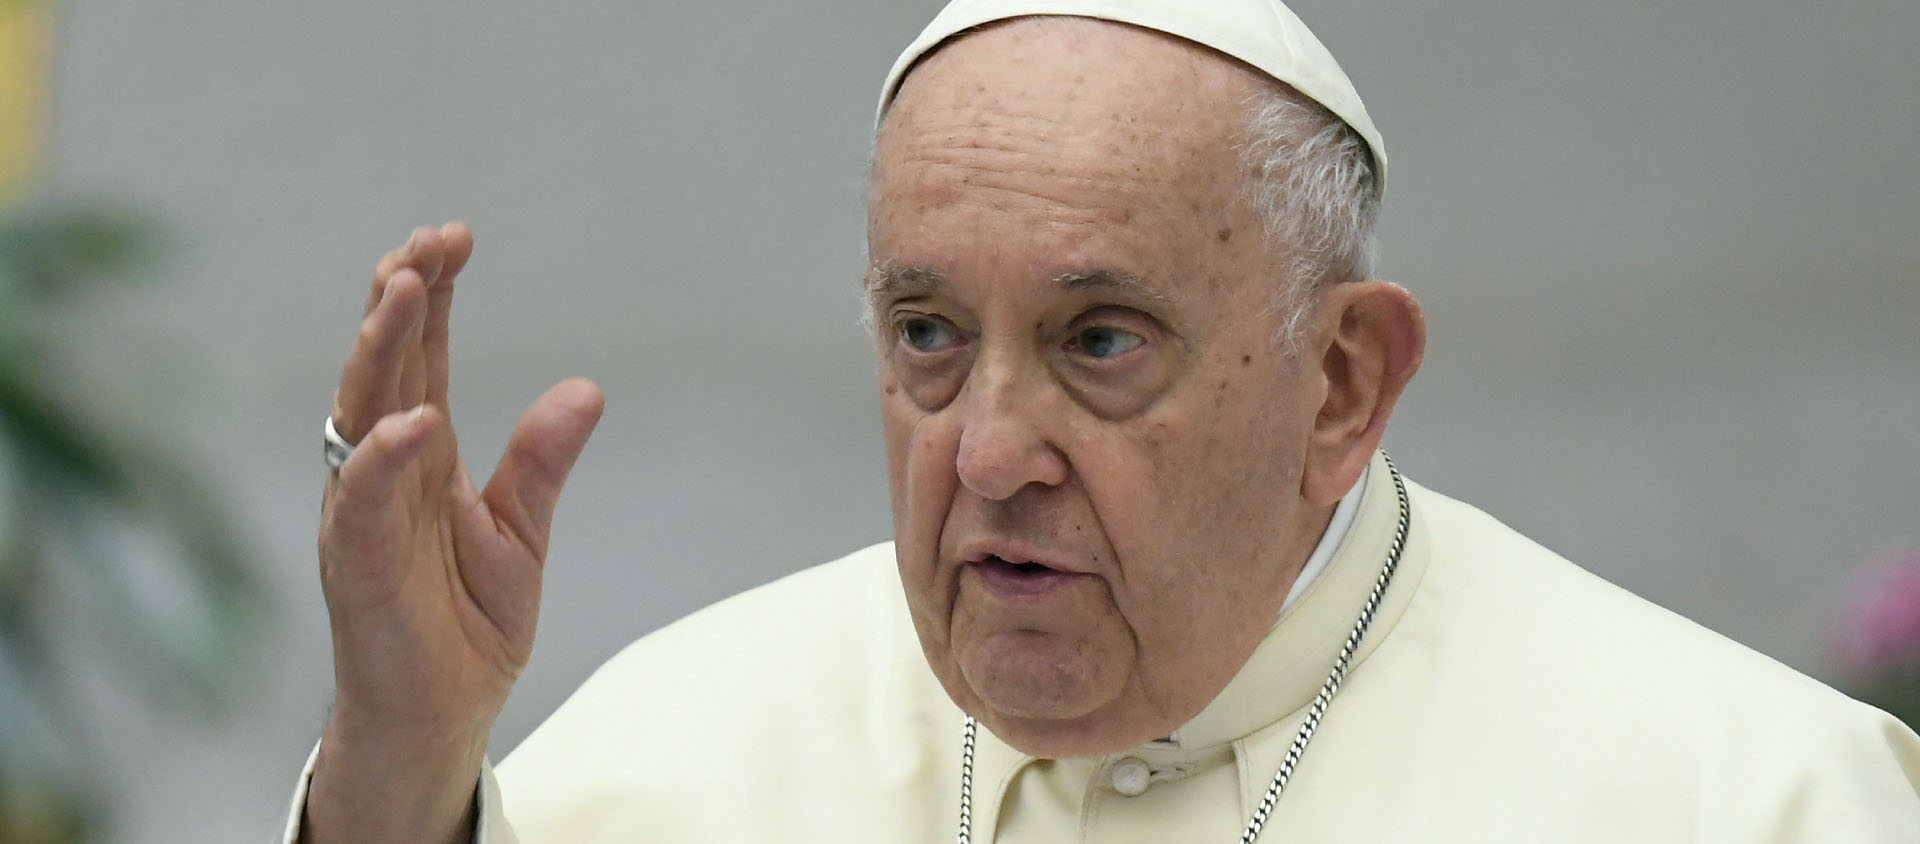 Le pape François explique que la théologie doit «interpréter prophétiquement le présent» et discerner «de nouvelles voies pour l’avenir» | © Vatican Media